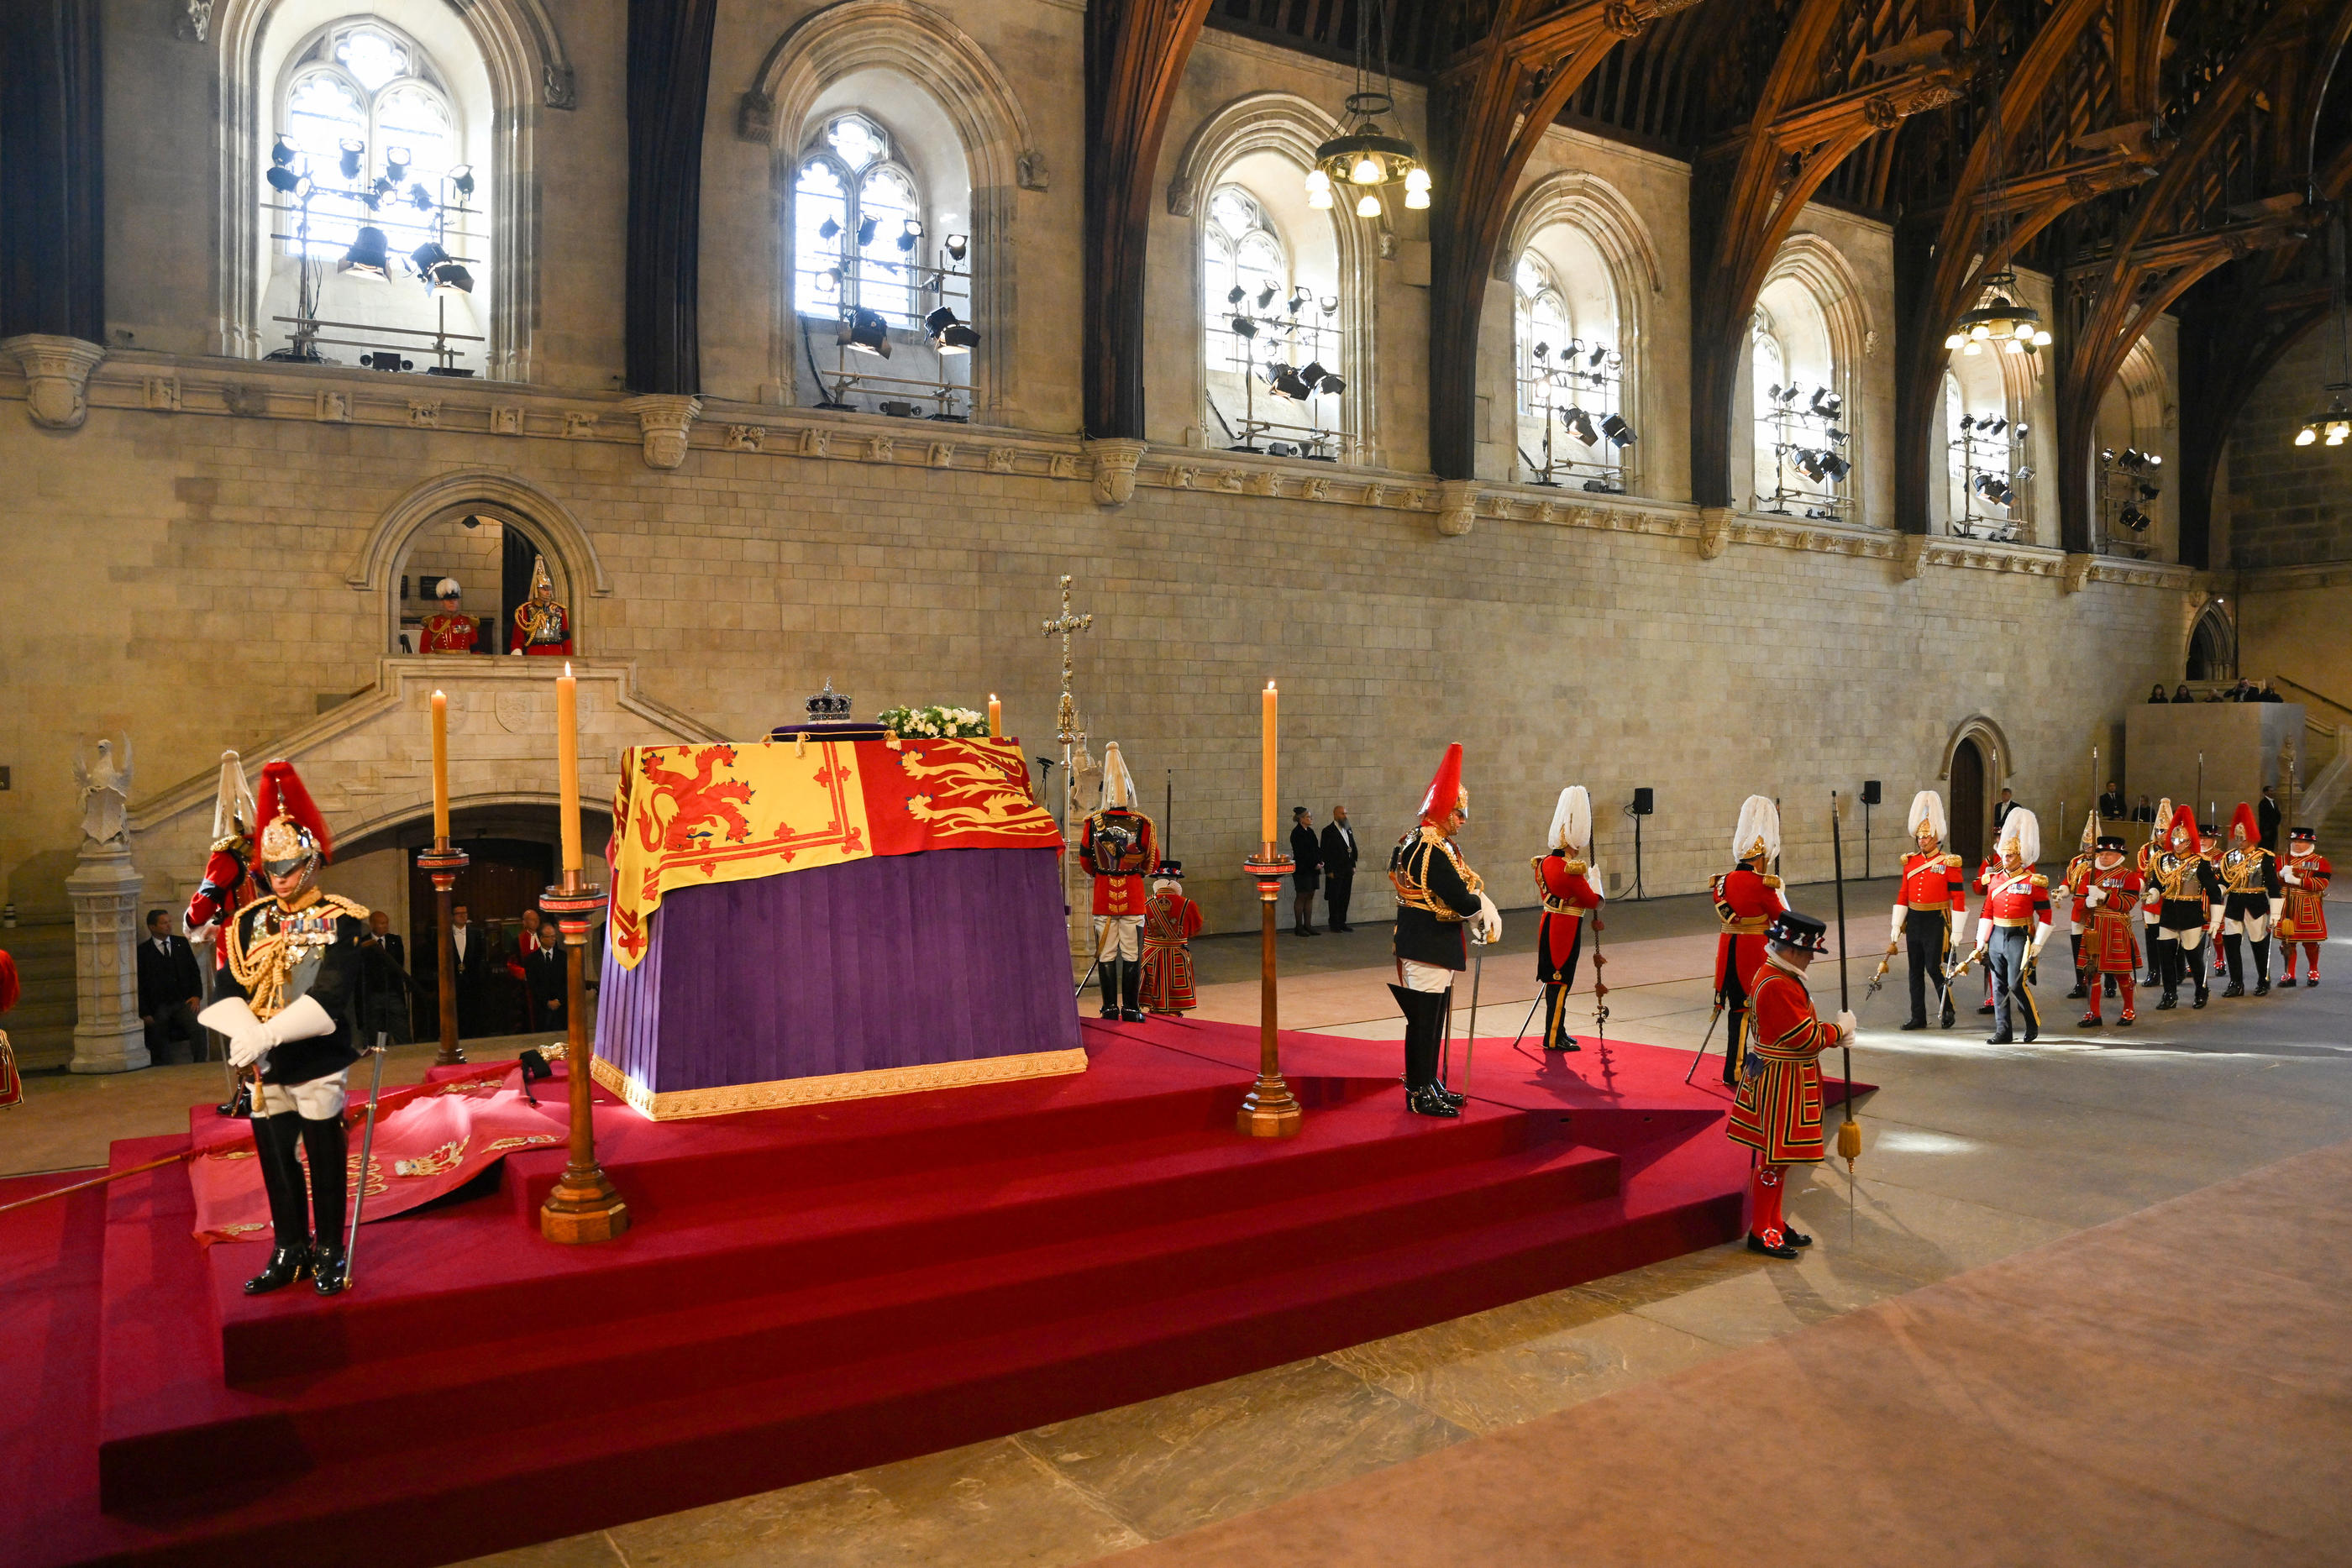 Les gardes autour du cercueil d'Elizabeth II se relaient régulièrement. Reuters/David Ramos